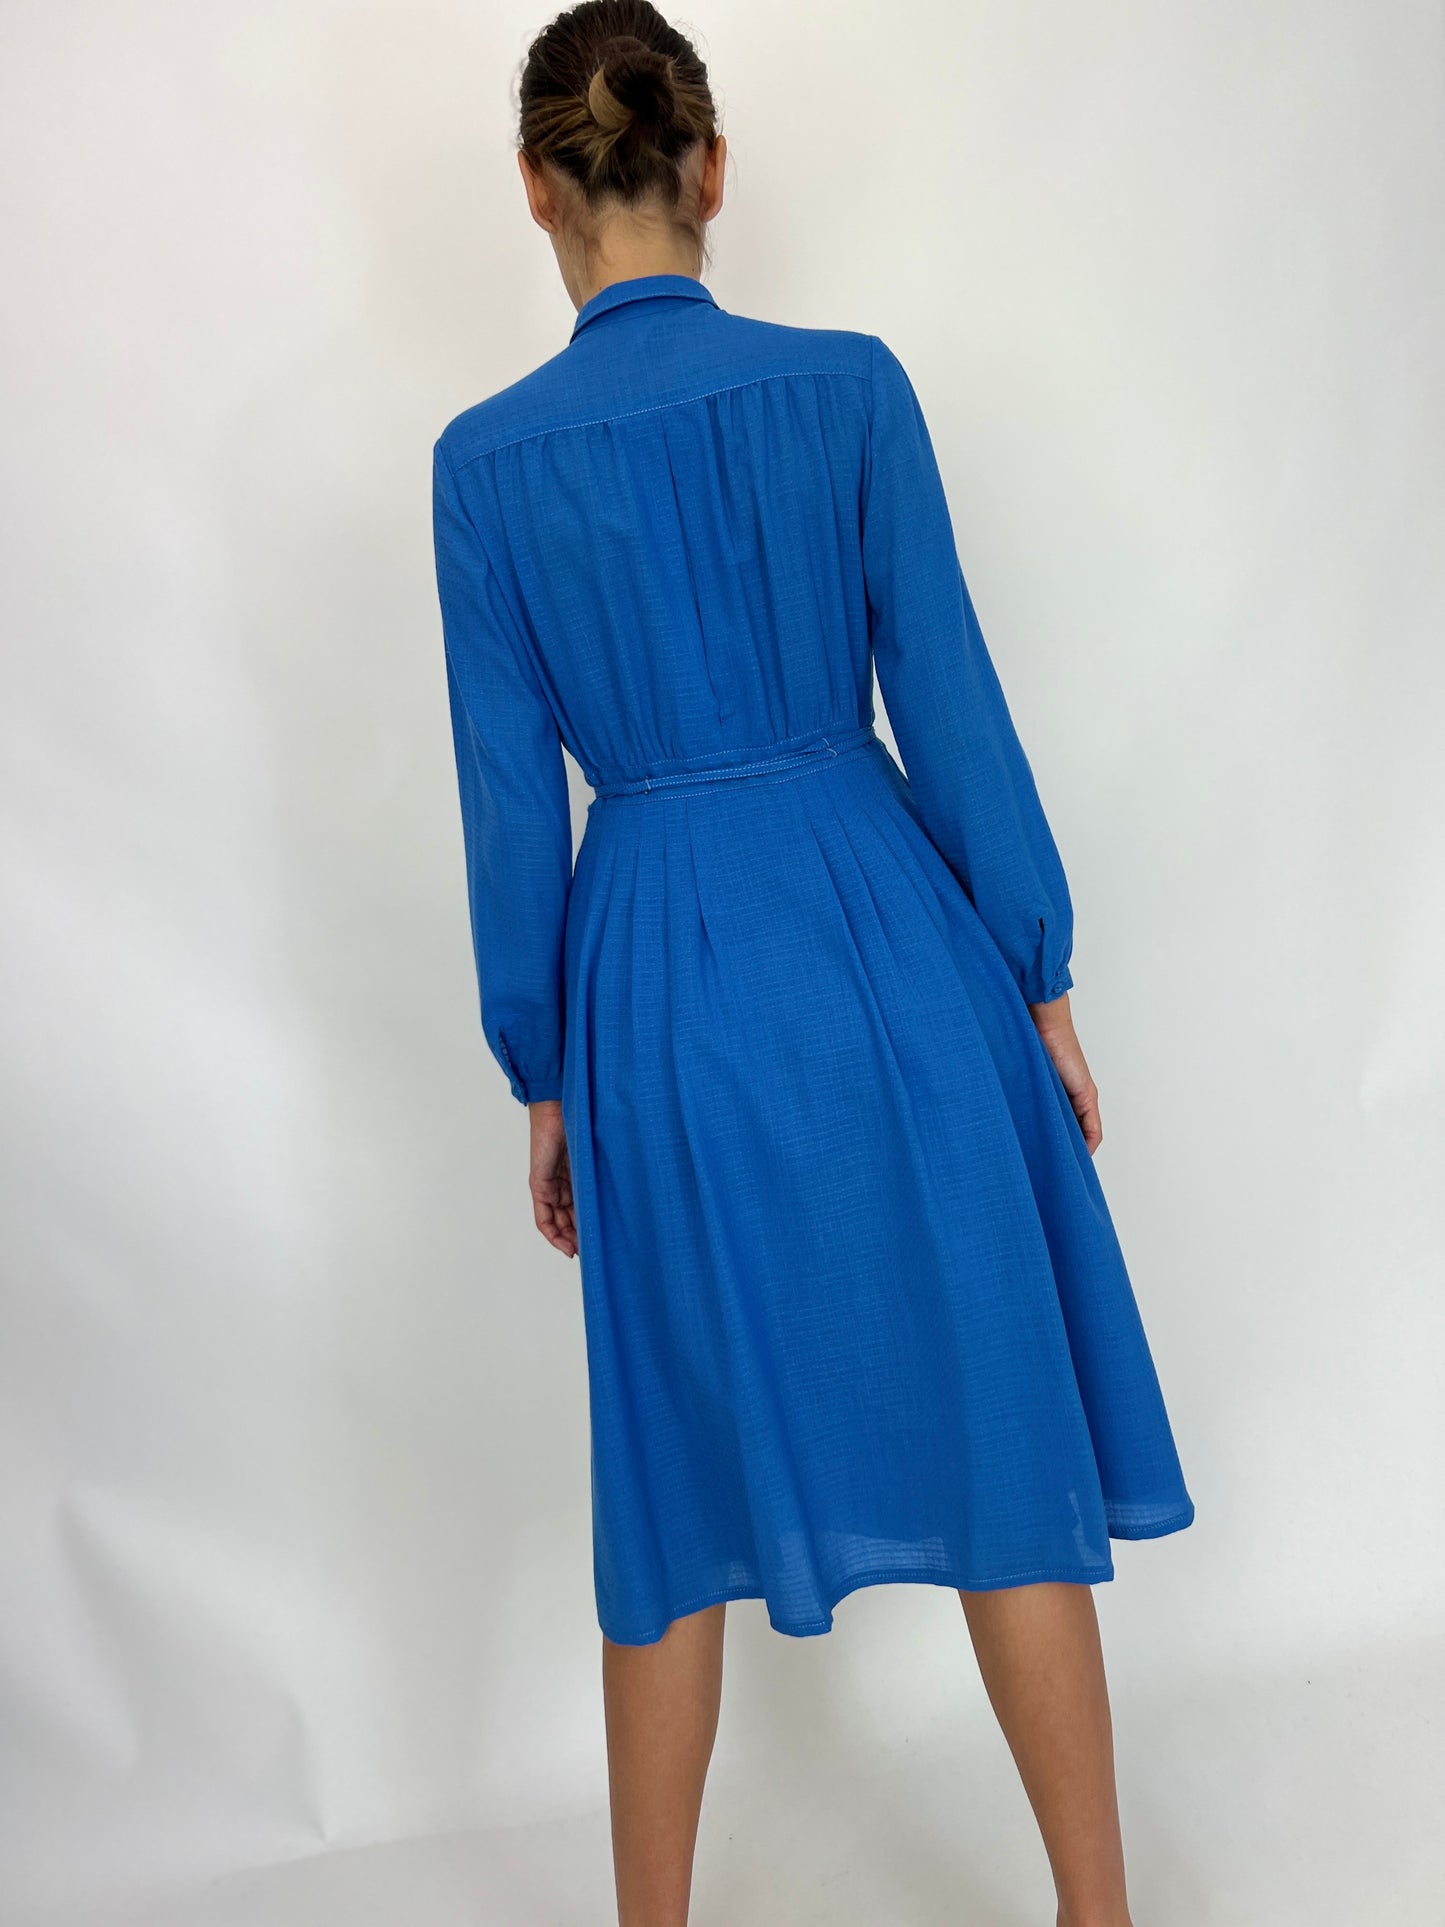 Rochie vintage albastru ciel lana extrafina texturată